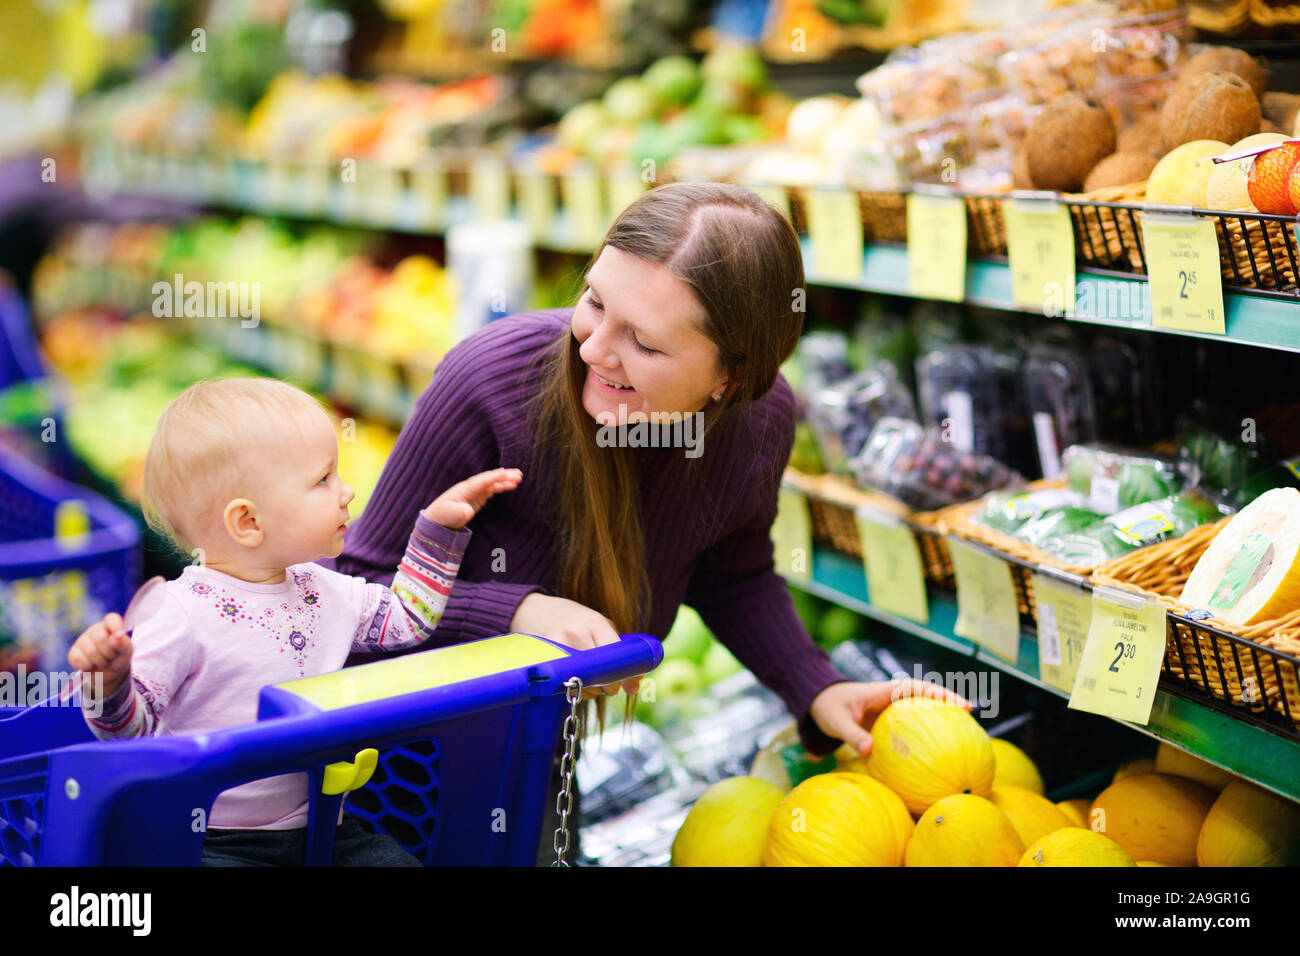 Frau mit Kleinkind kauft im Supermarkt ein, Finnland Stock Photo